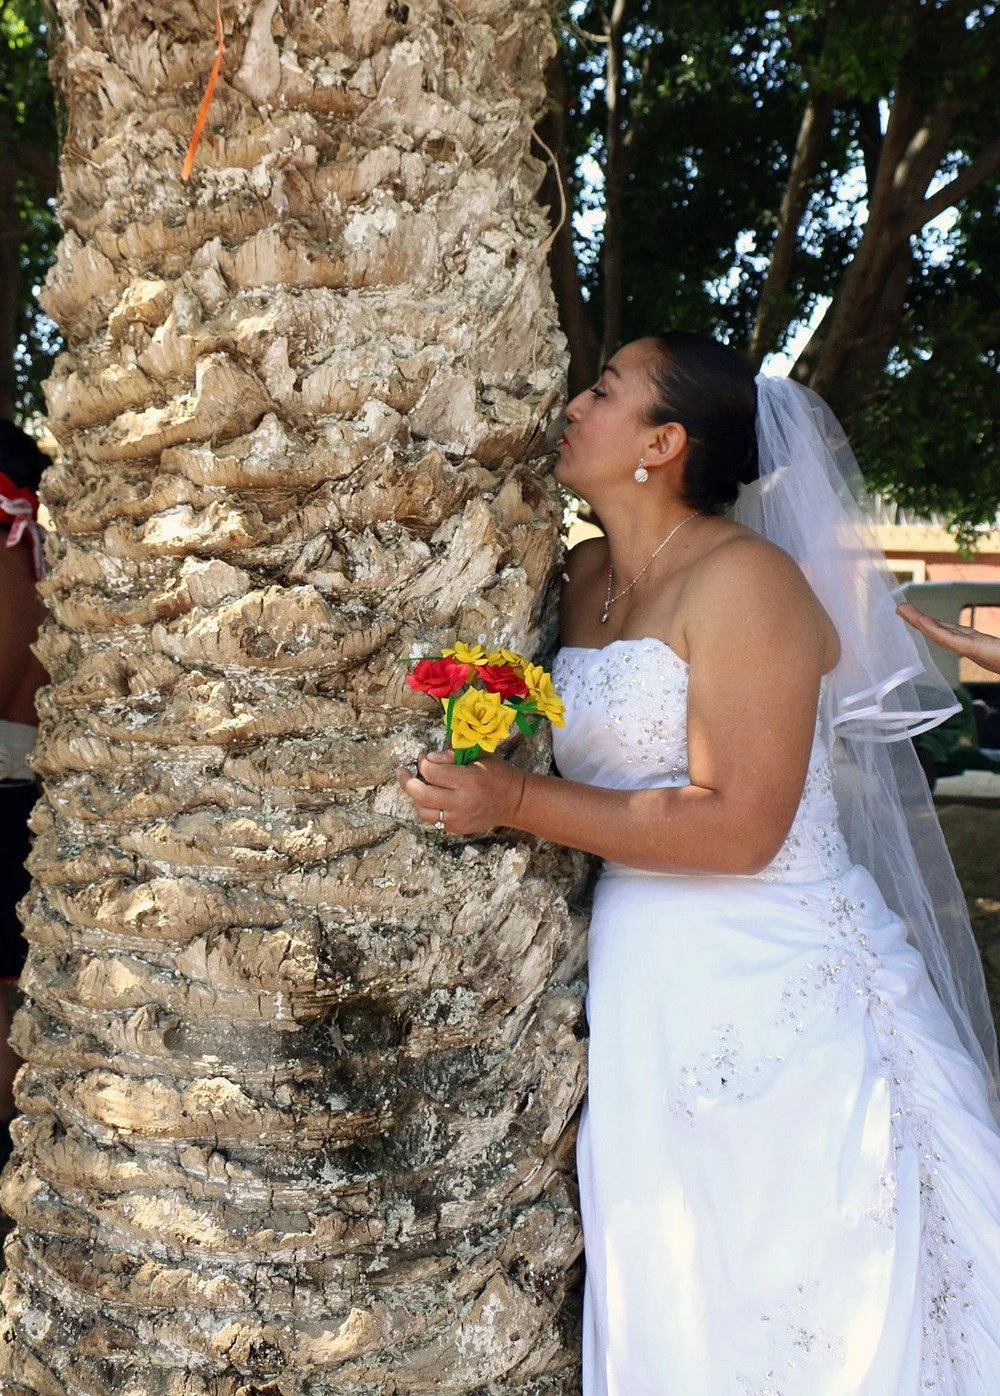 Мексиканки устроили протест и вышли замуж за деревья: фото свадебной церемонии - фото 374016